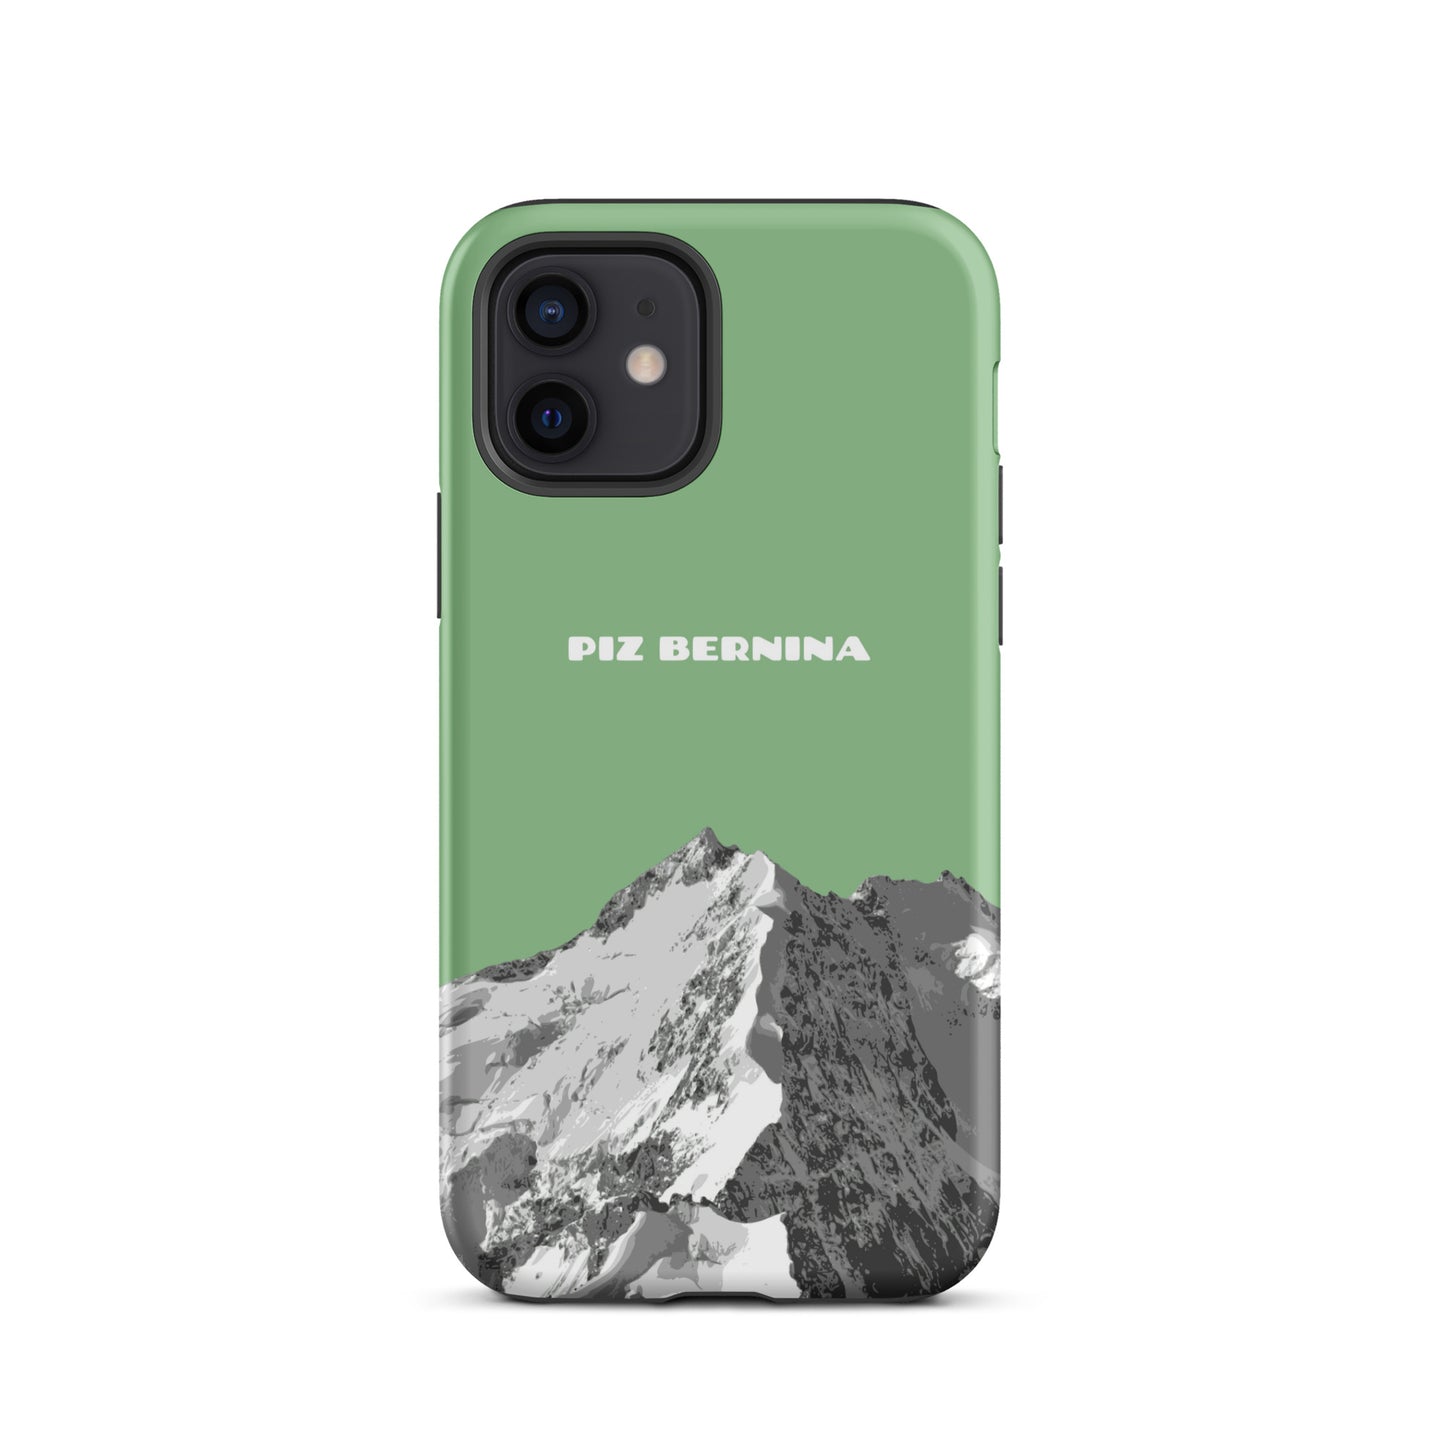 Hülle für das iPhone 12 von Apple in der Farbe Hellgrün, dass den Piz Bernina in Graubünden zeigt.